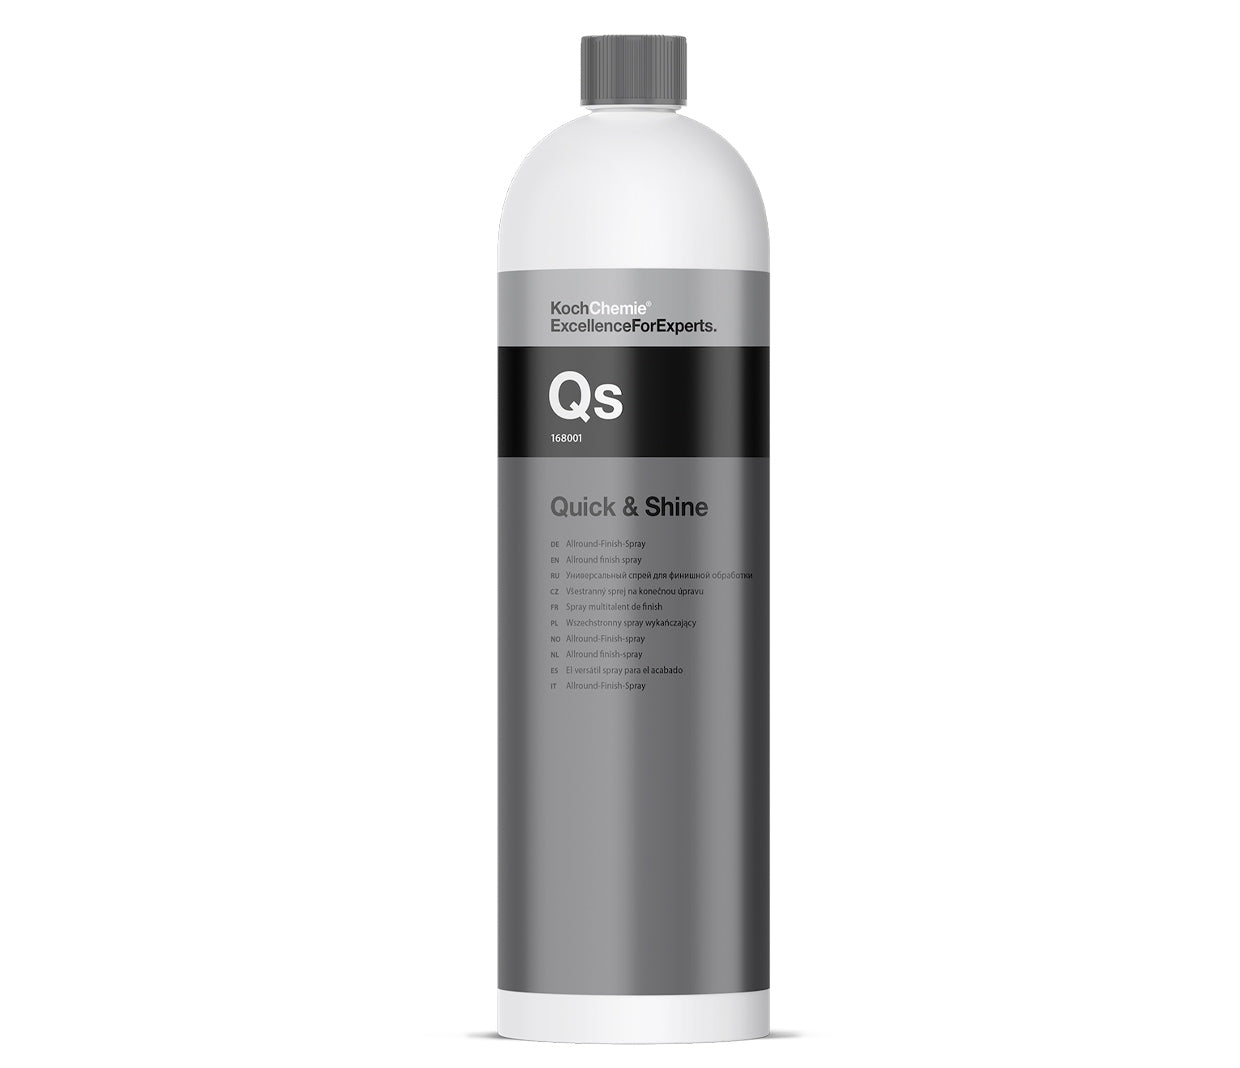 Koch Chemie - QS Quick & Shine